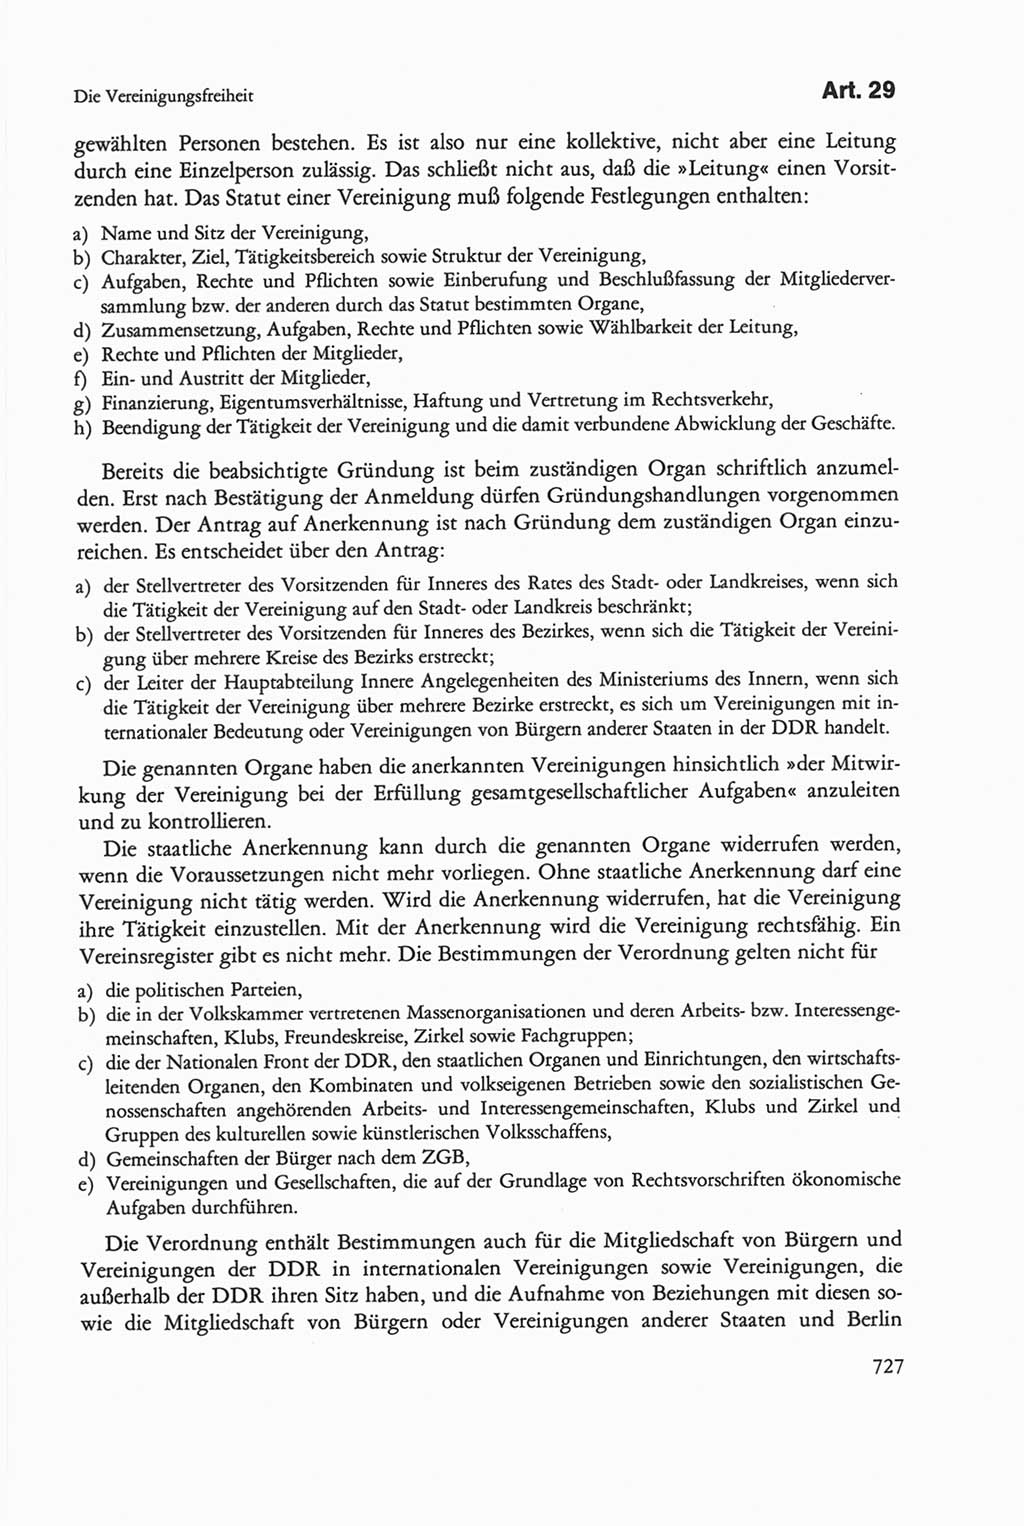 Die sozialistische Verfassung der Deutschen Demokratischen Republik (DDR), Kommentar mit einem Nachtrag 1997, Seite 727 (Soz. Verf. DDR Komm. Nachtr. 1997, S. 727)